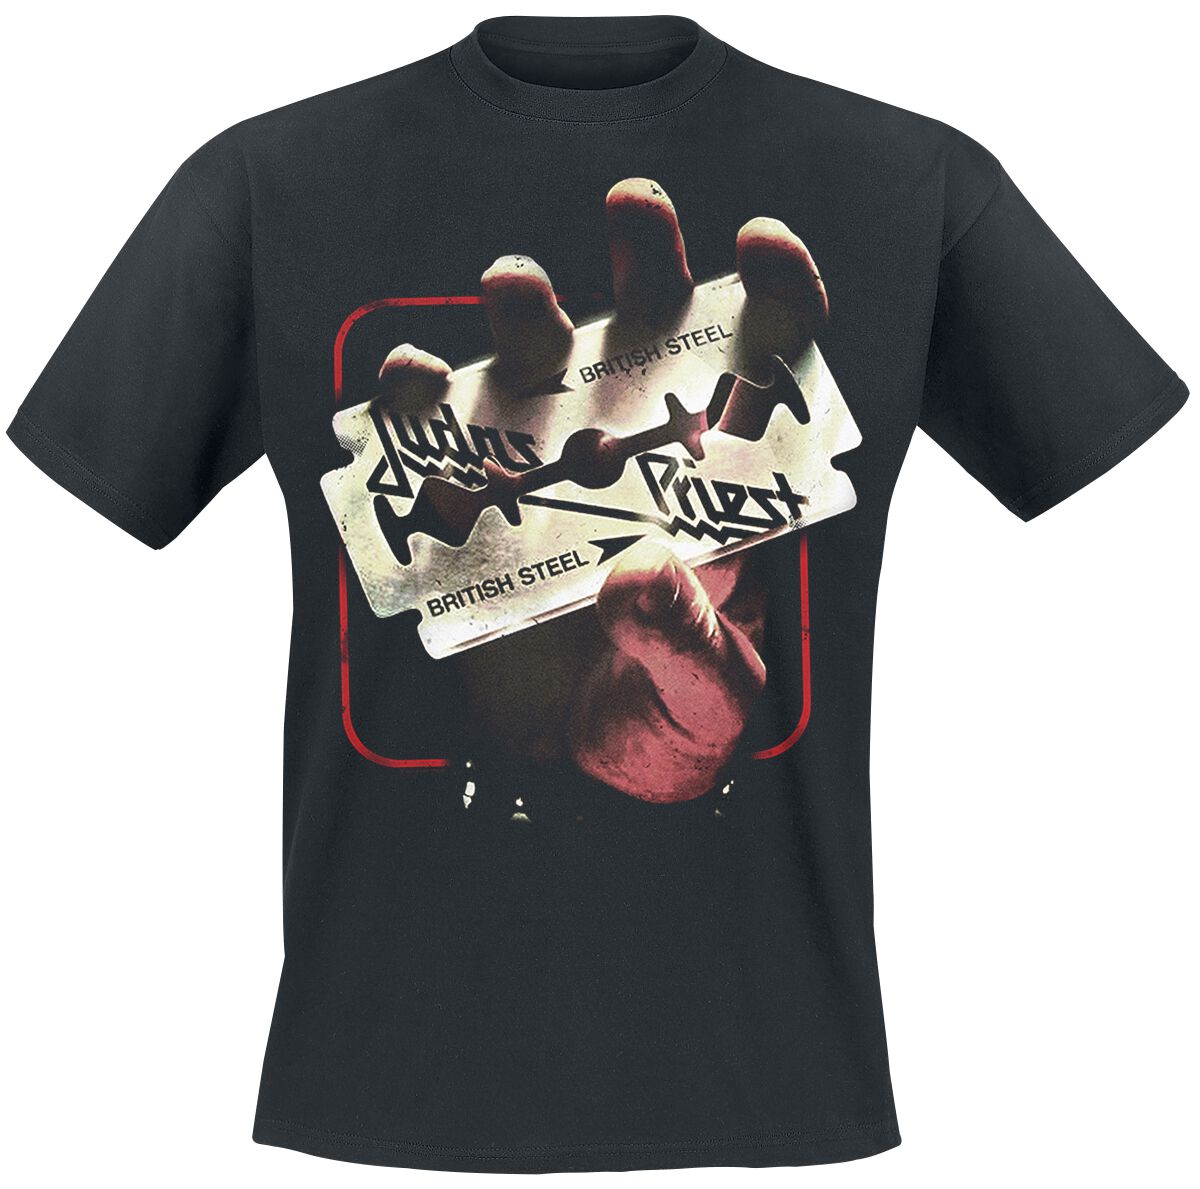 Judas Priest British Steel 50HMY Tour T-Shirt schwarz in XXL